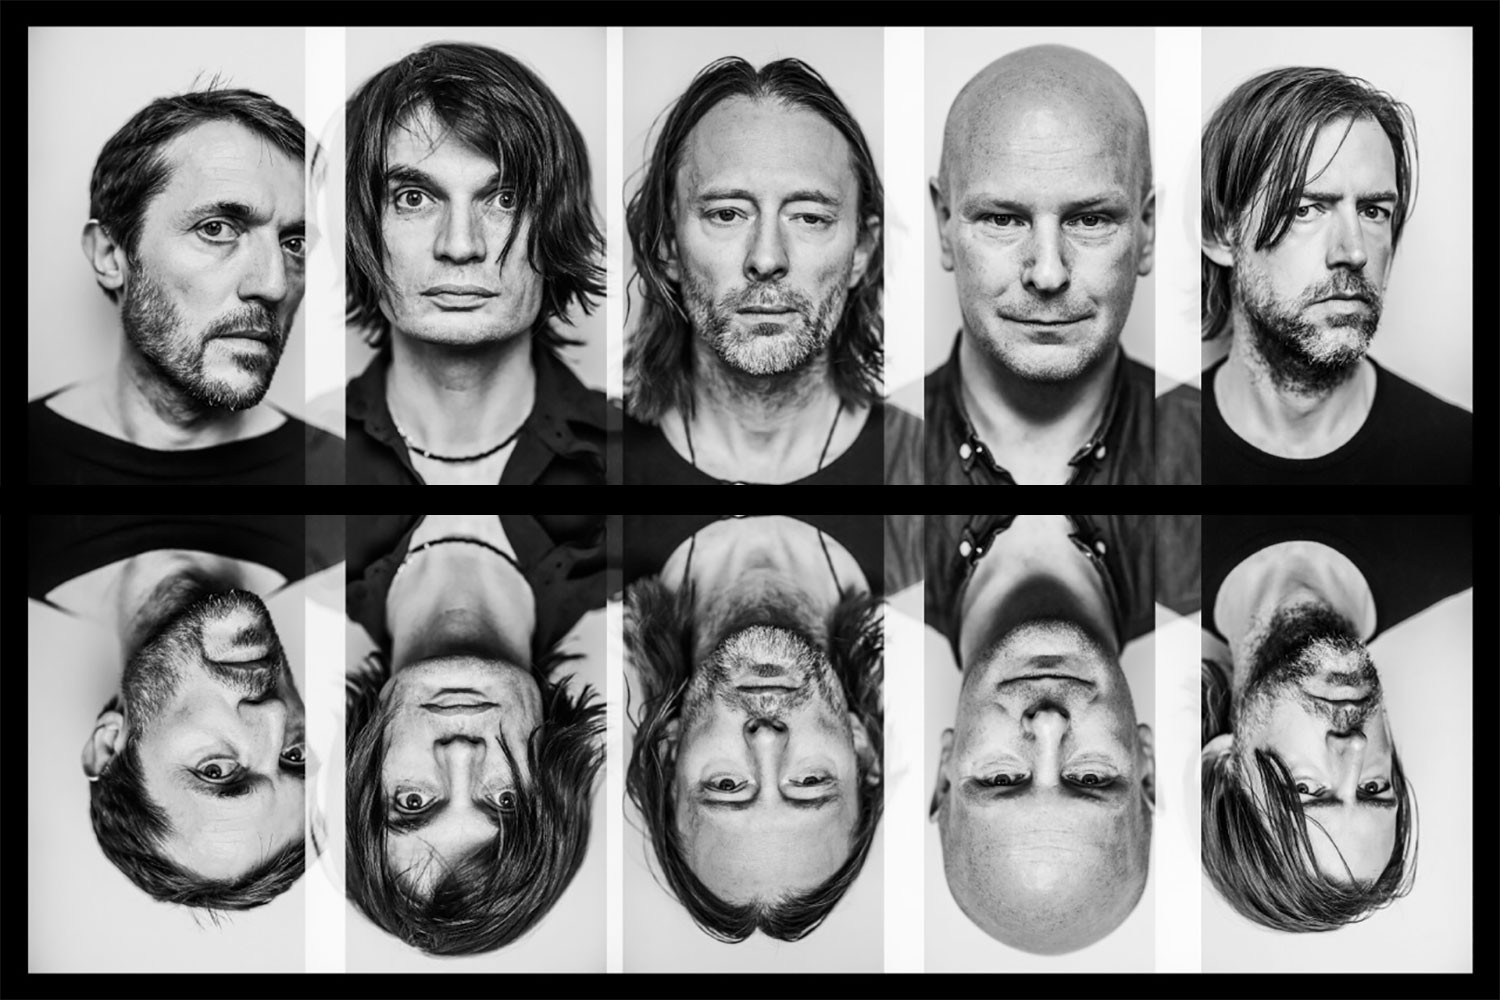 Музыкальная группа Radiohead может выступить в фортнайт 1 - Музыкальная группа Radiohead может выступить в фортнайт